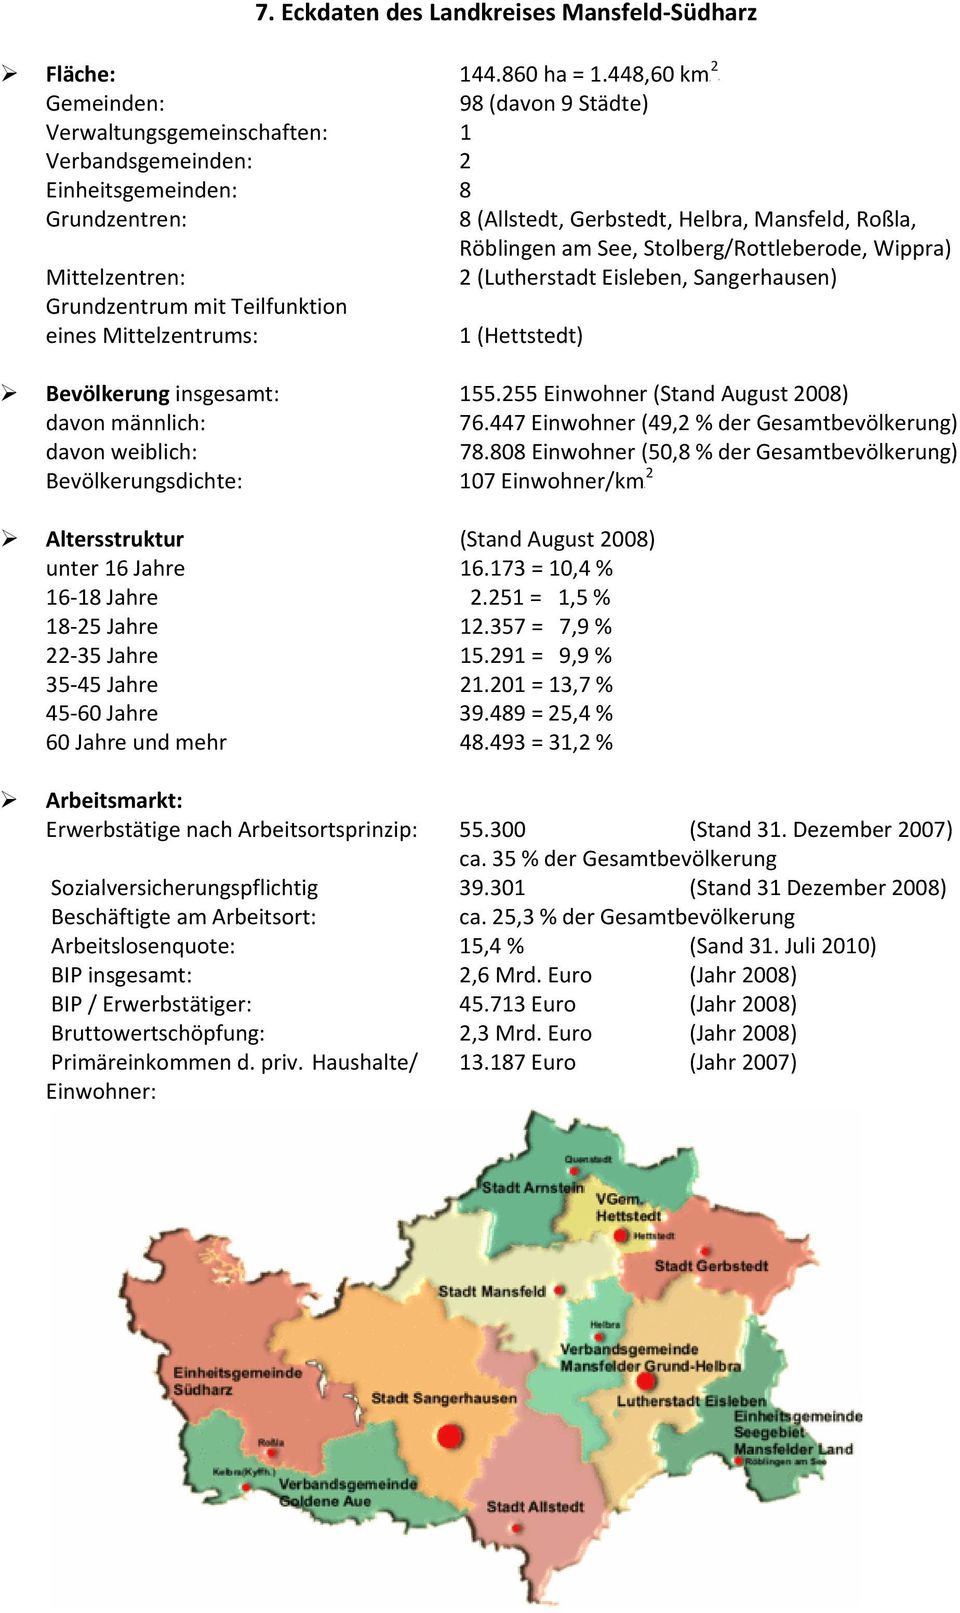 Stolberg/Rottleberode, Wippra) Mittelzentren: 2 (Lutherstadt Eisleben, Sangerhausen) Grundzentrum mit Teilfunktion eines Mittelzentrums: 1 (Hettstedt) Bevölkerung insgesamt: 155.